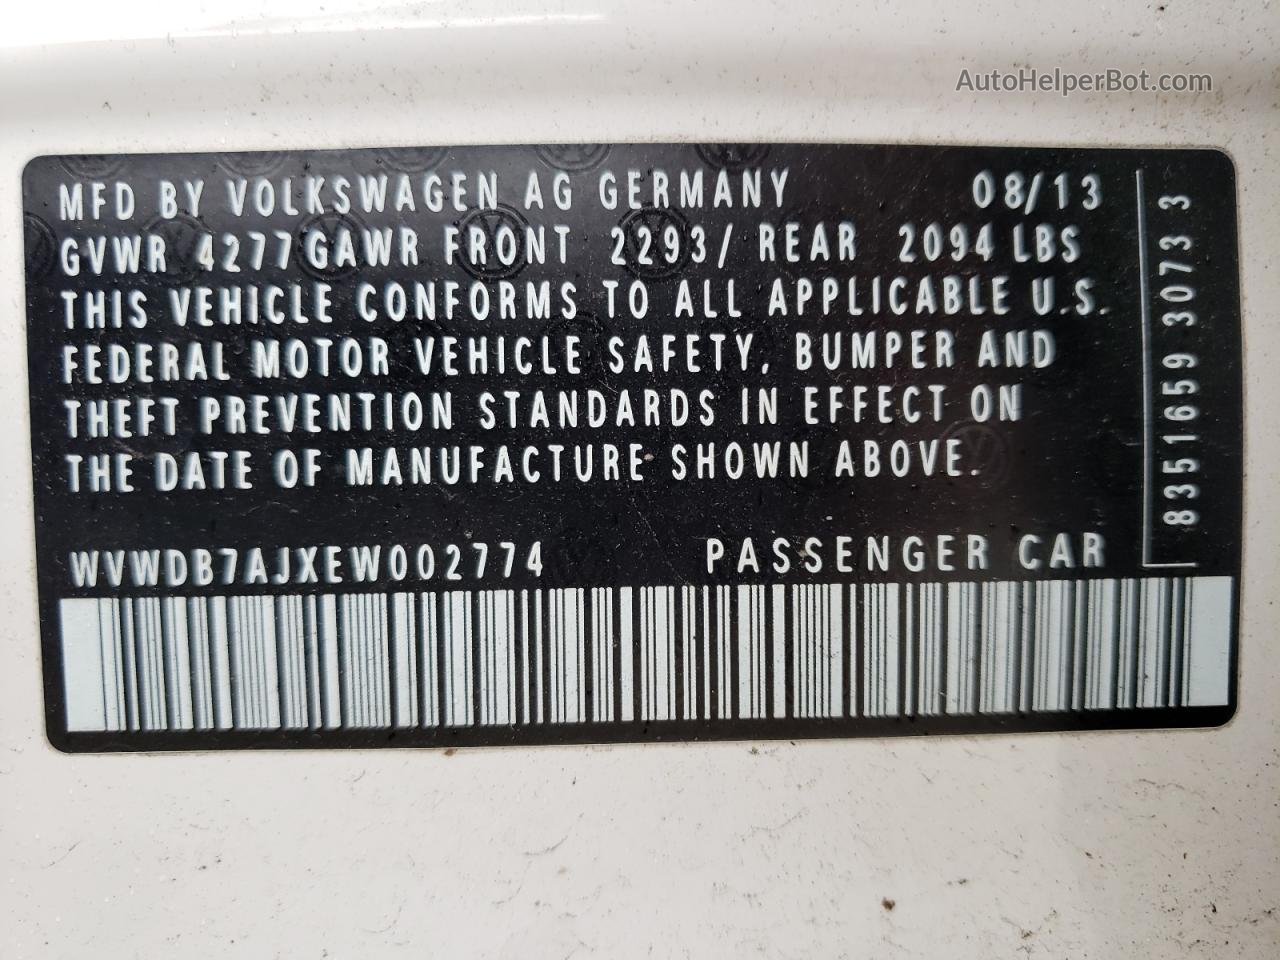 2014 Volkswagen Golf  White vin: WVWDB7AJXEW002774